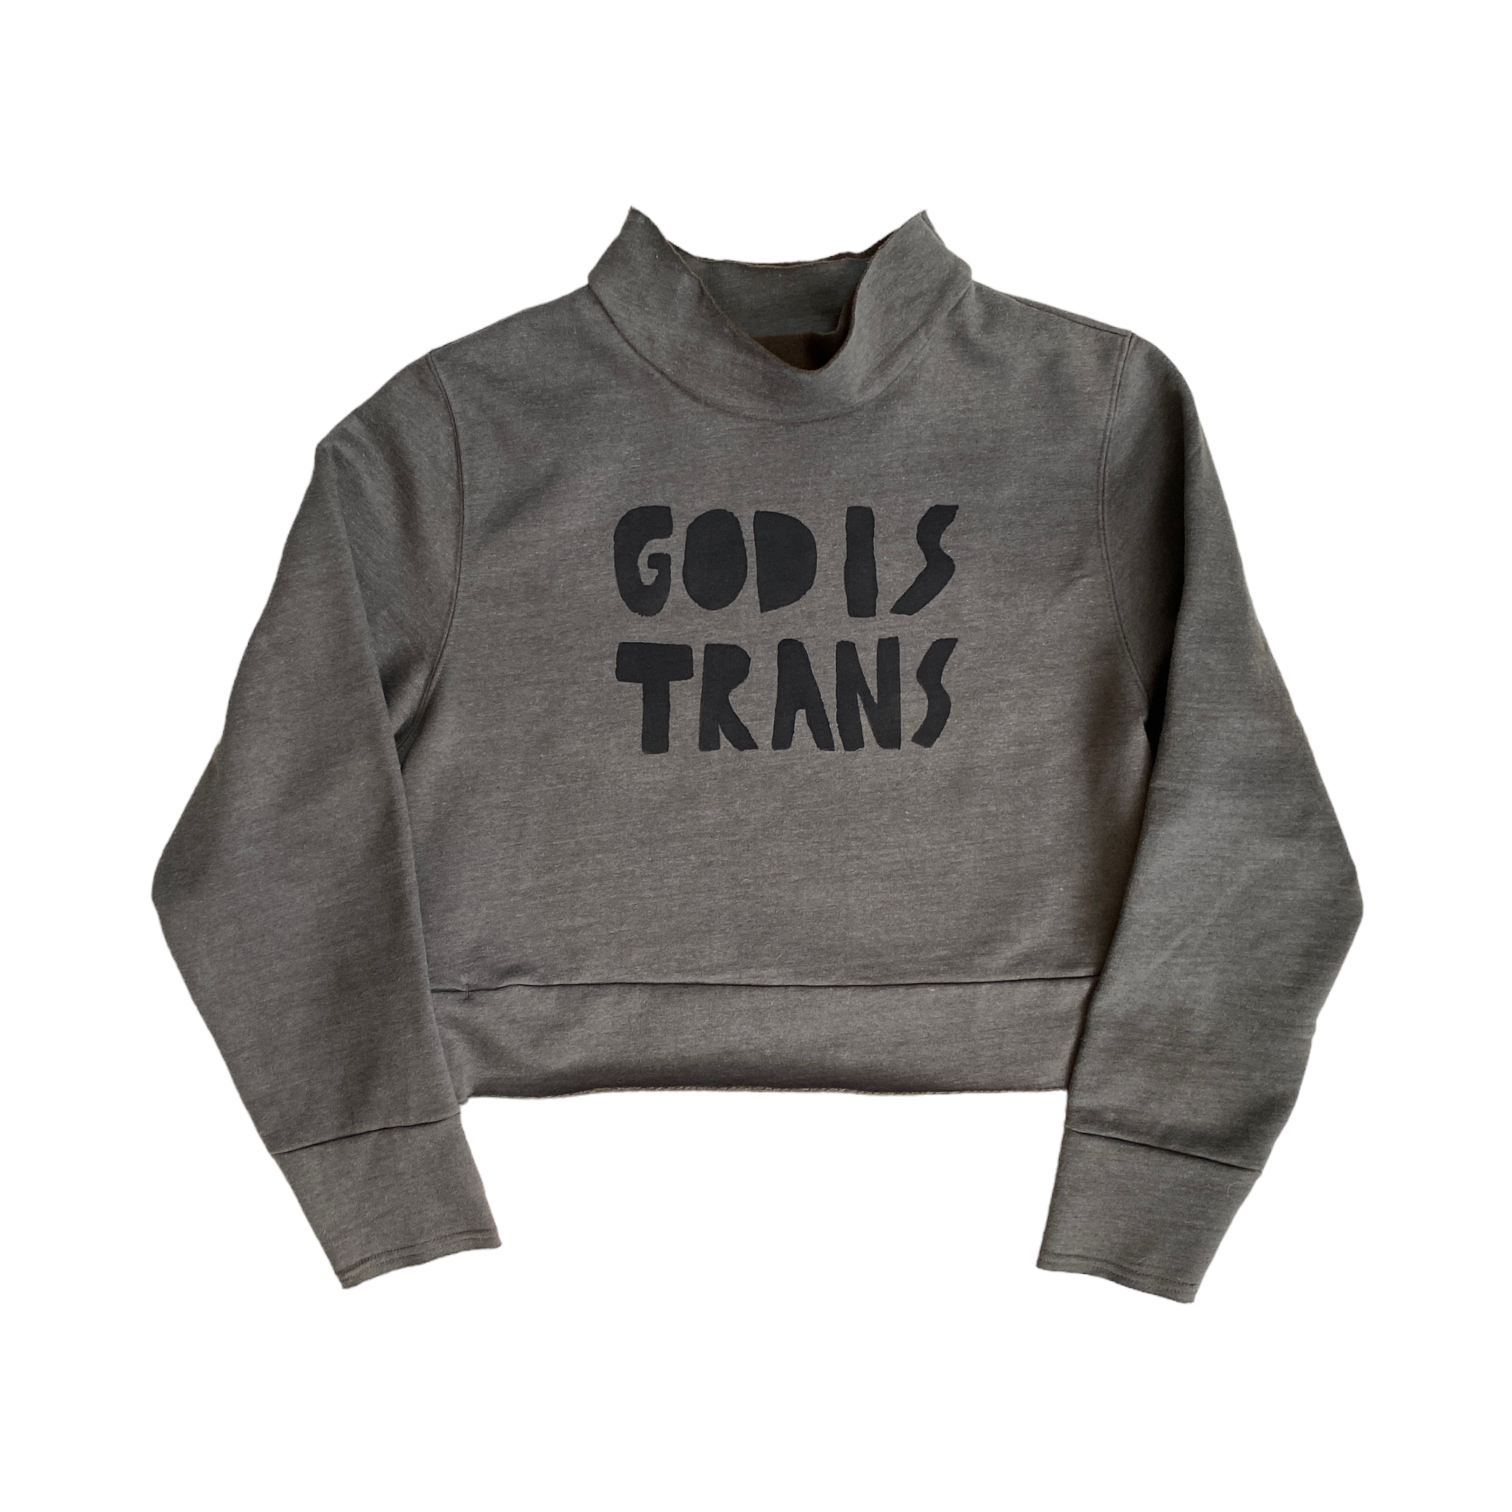 GOD IS TRANS cropped mockneck sweatshirt